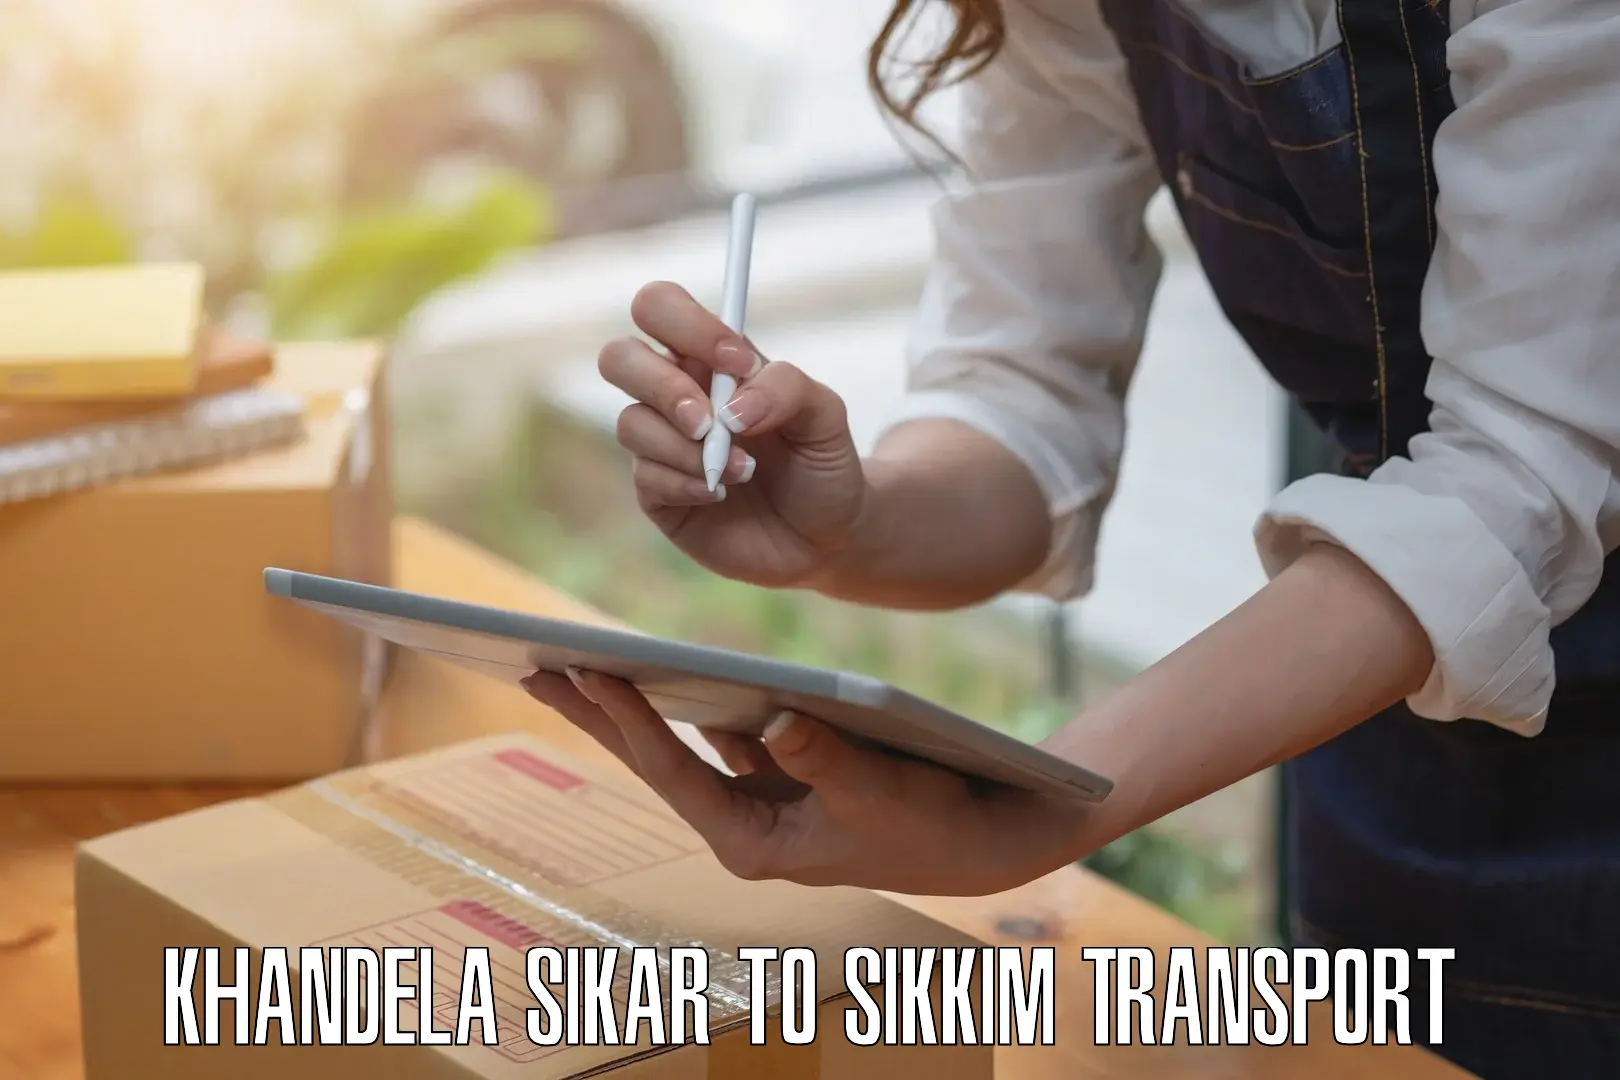 Furniture transport service Khandela Sikar to East Sikkim